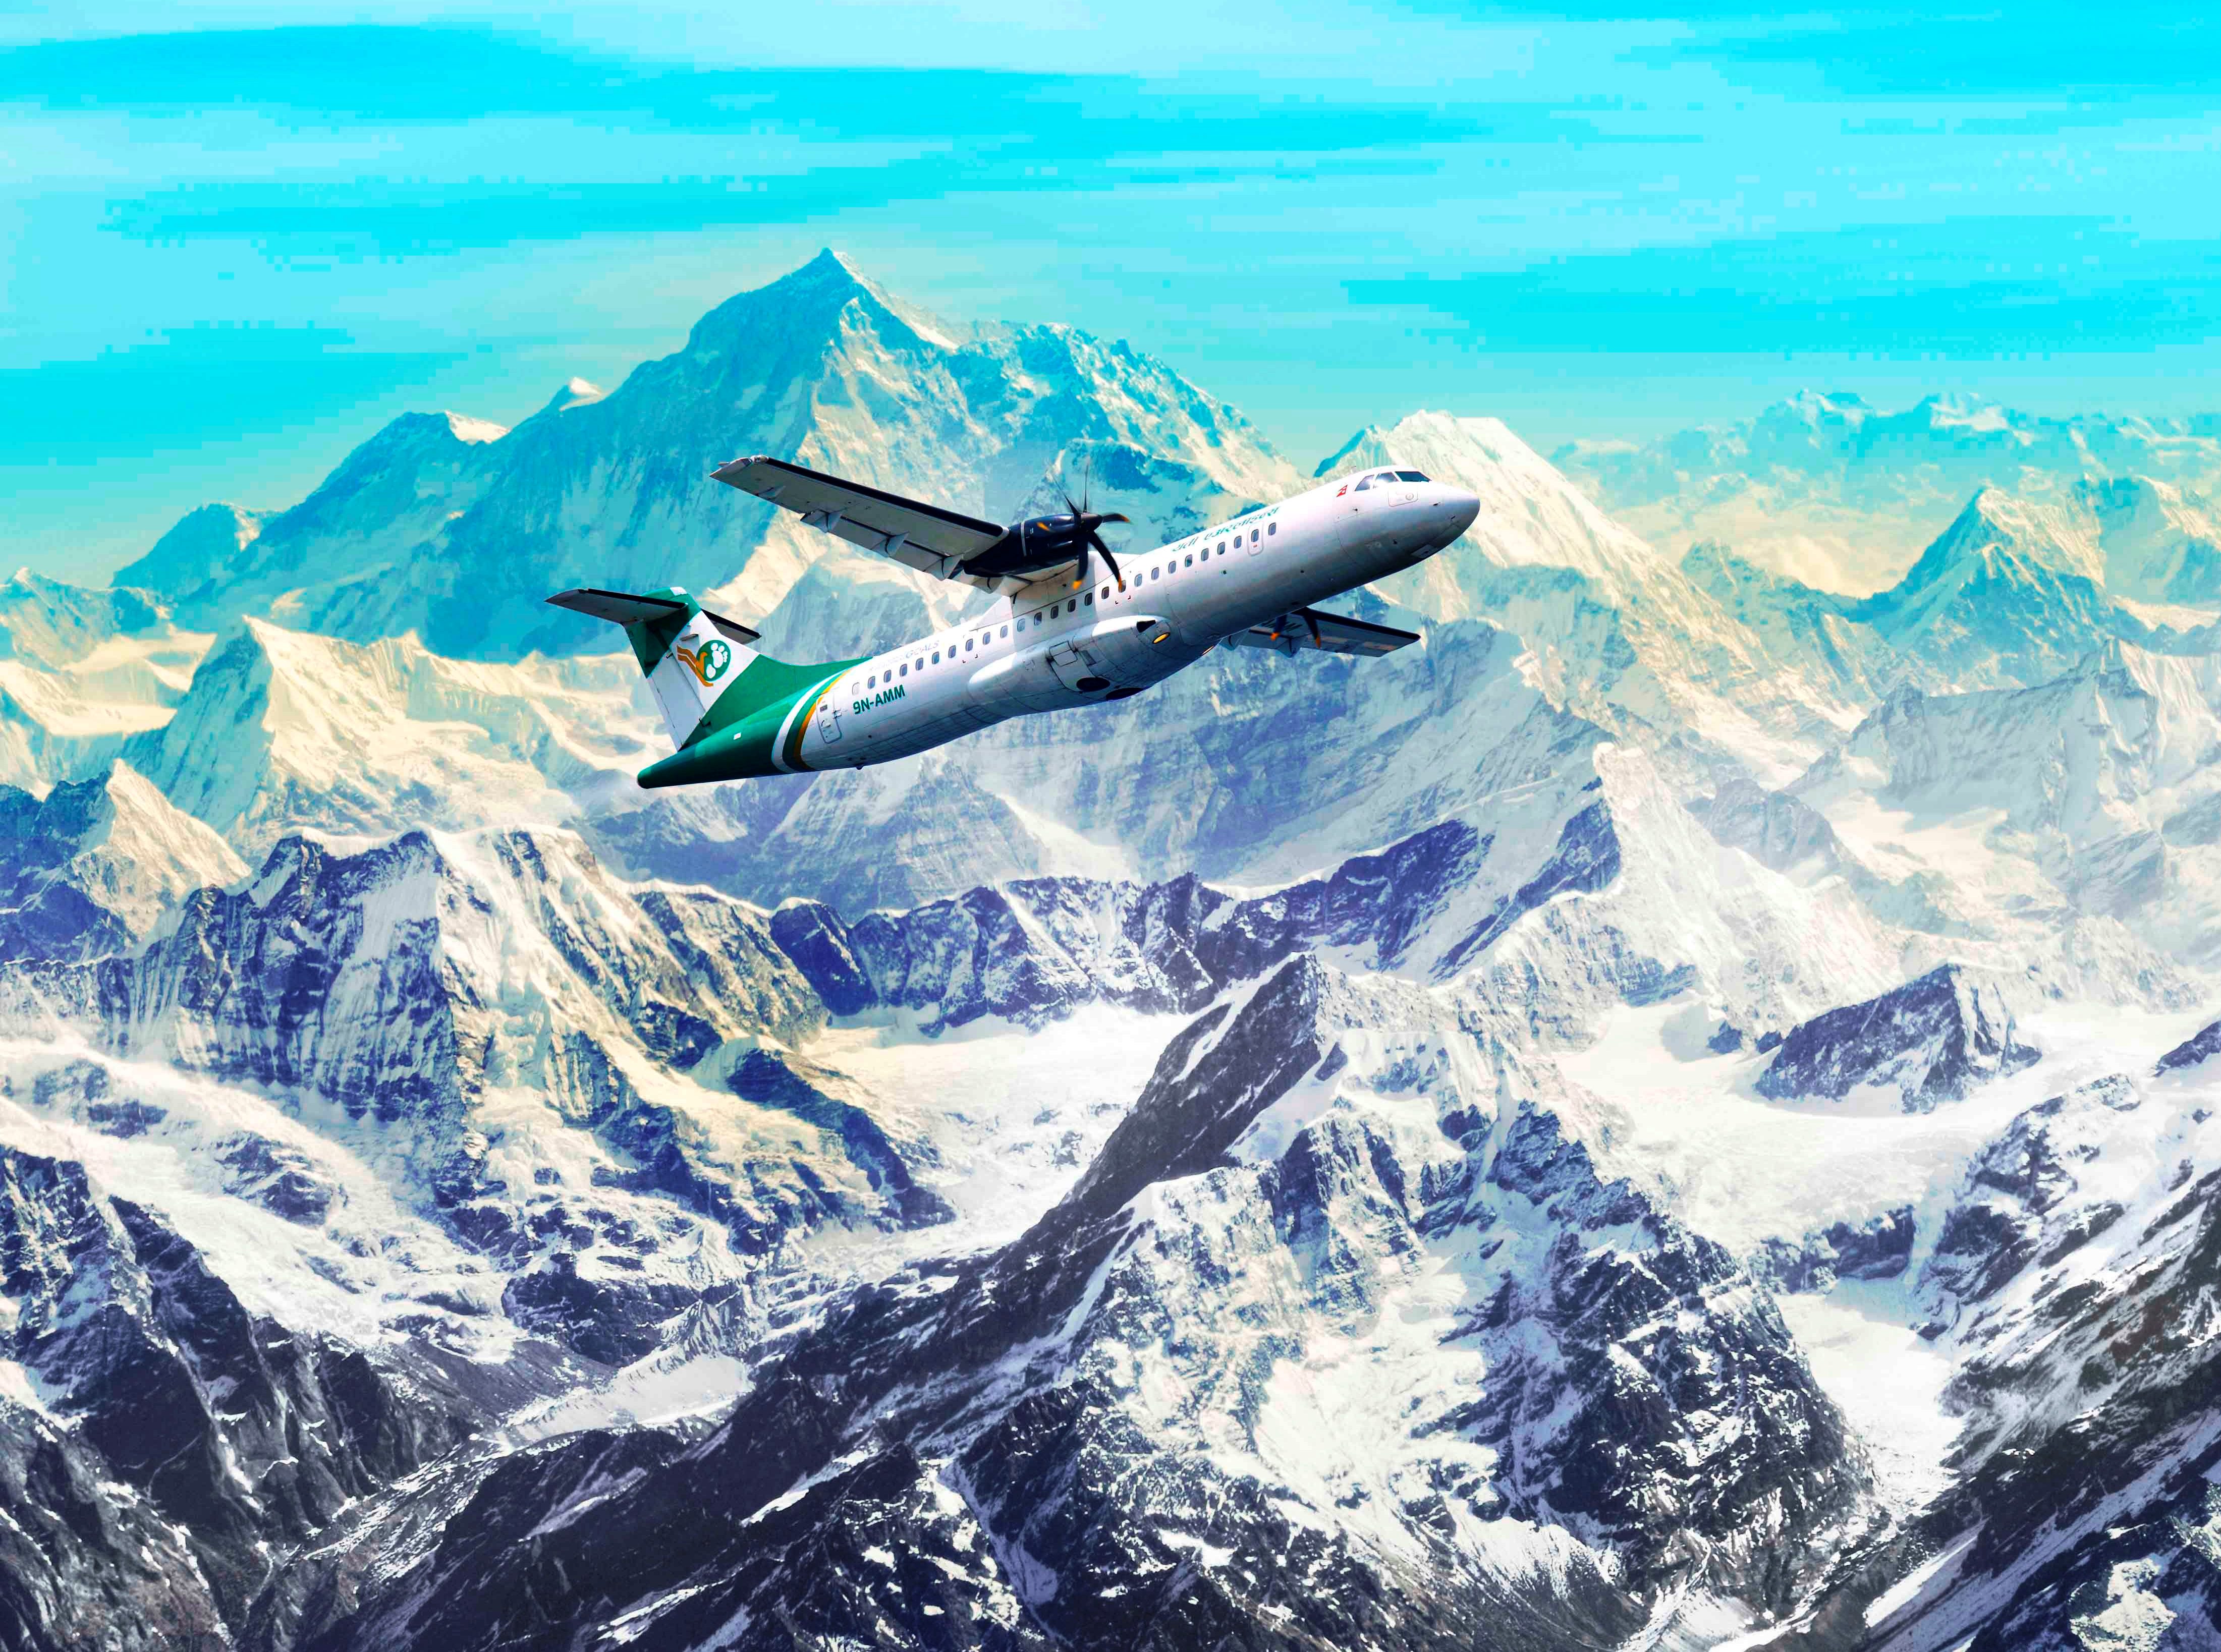 Everest Mountain Flight - Nepal